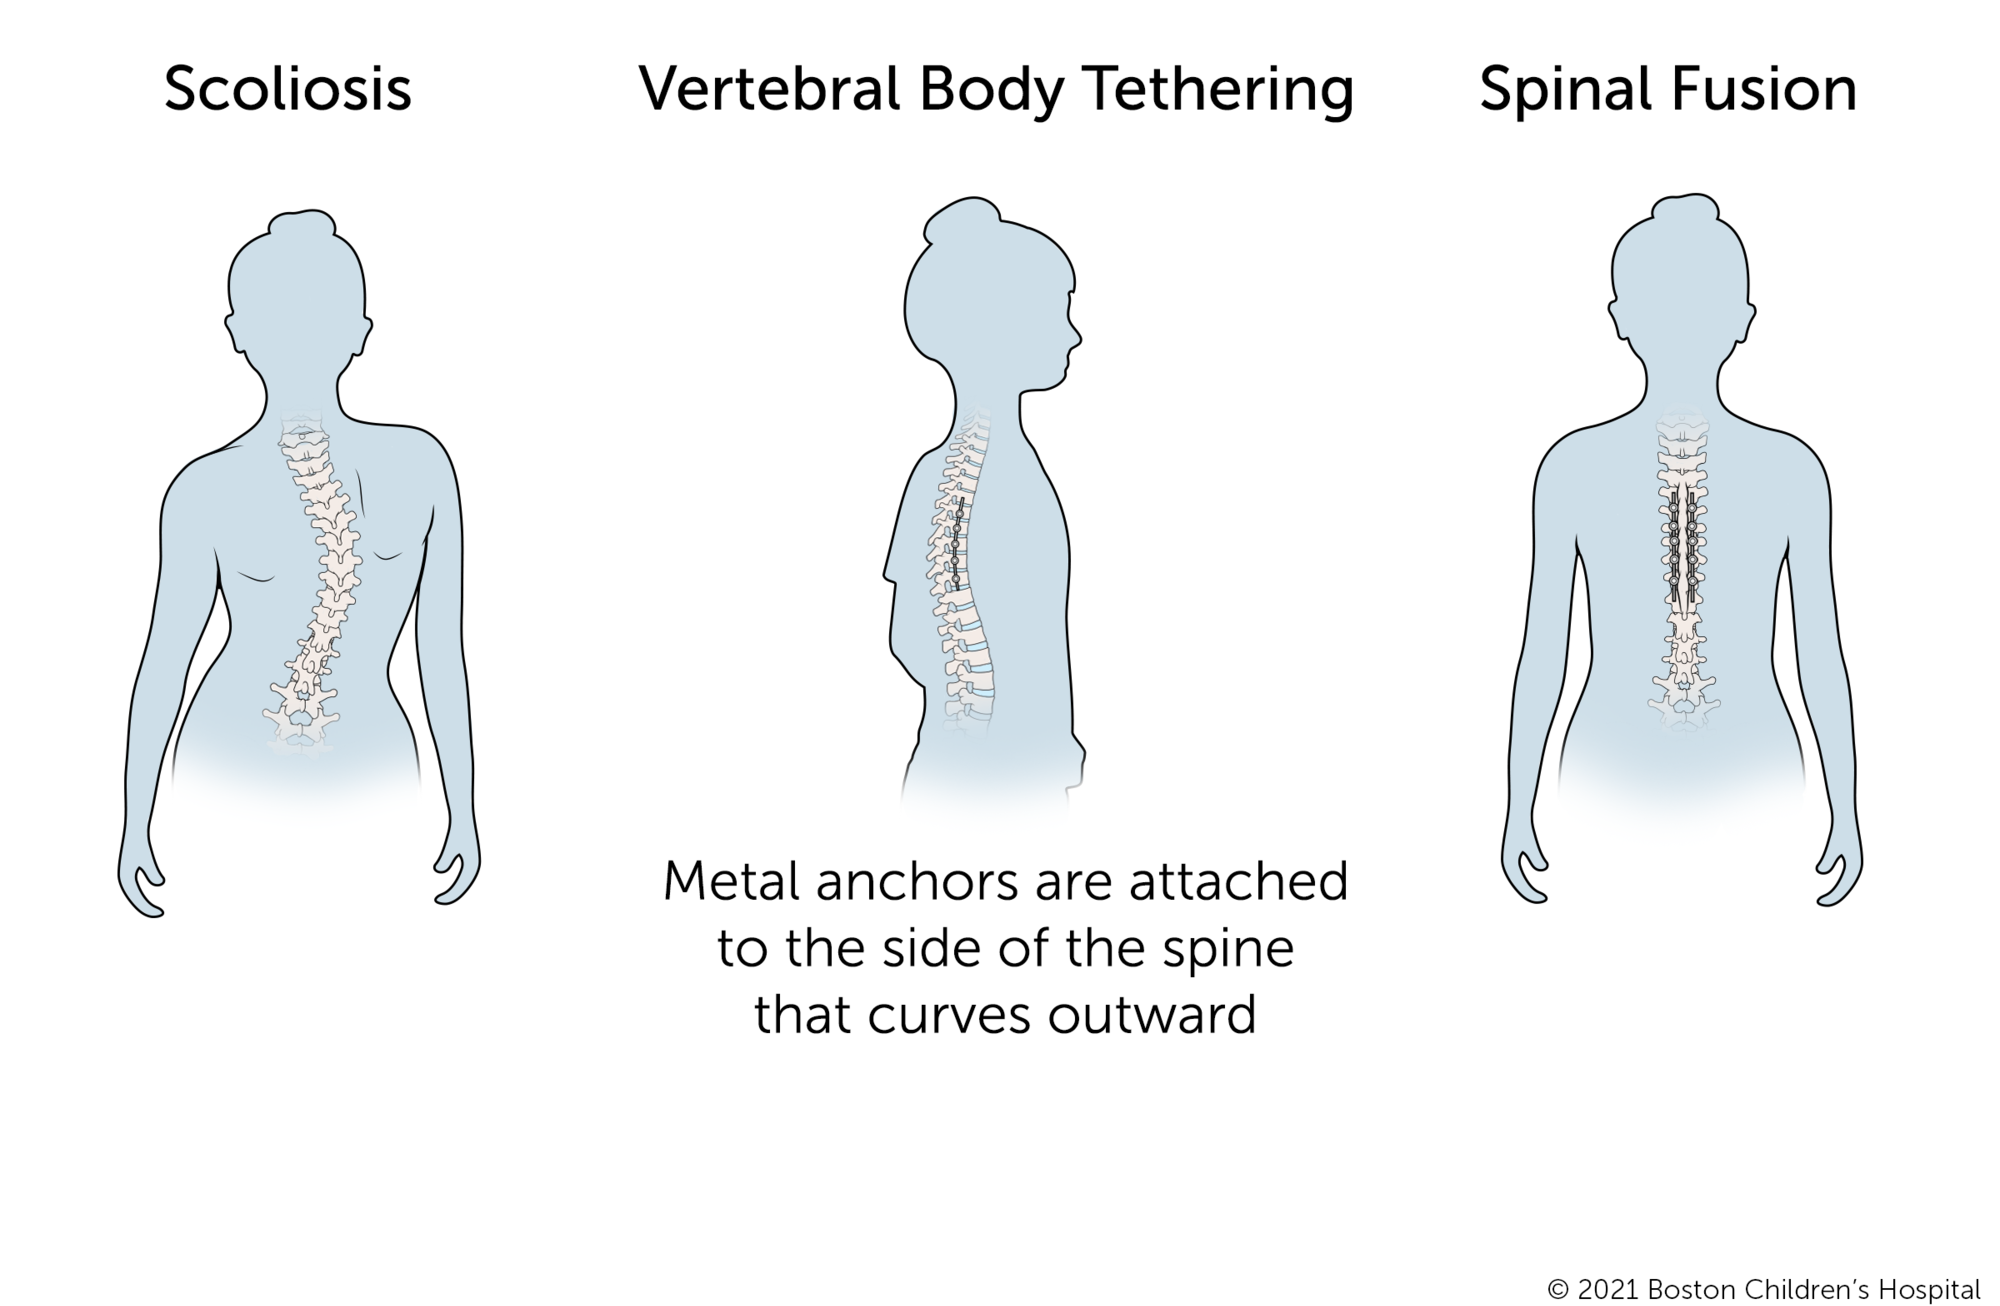 椎体拘束是一种新的程序轻度脊柱侧凸。金属锚和灵活的系绳相连的脊柱曲线向外。相比之下,对脊柱融合手术,金属锚和僵硬的棒连接到双方的脊柱。